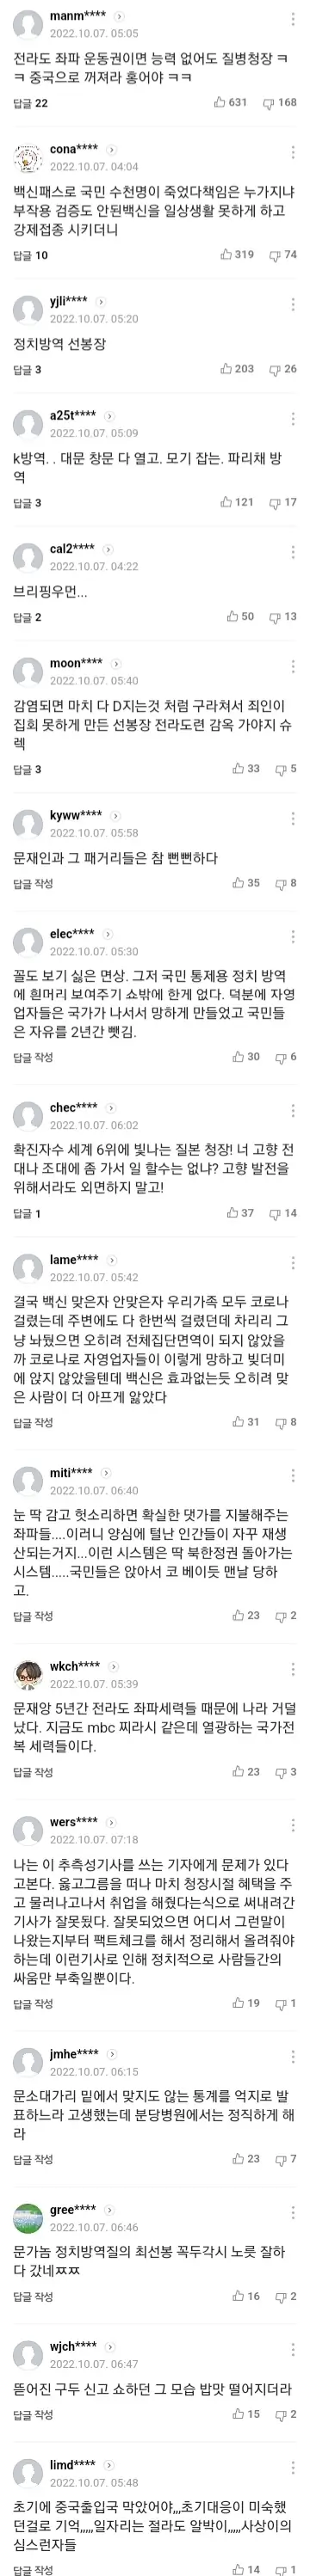 정은경 전 질병청장 서울대병원 취업 논란